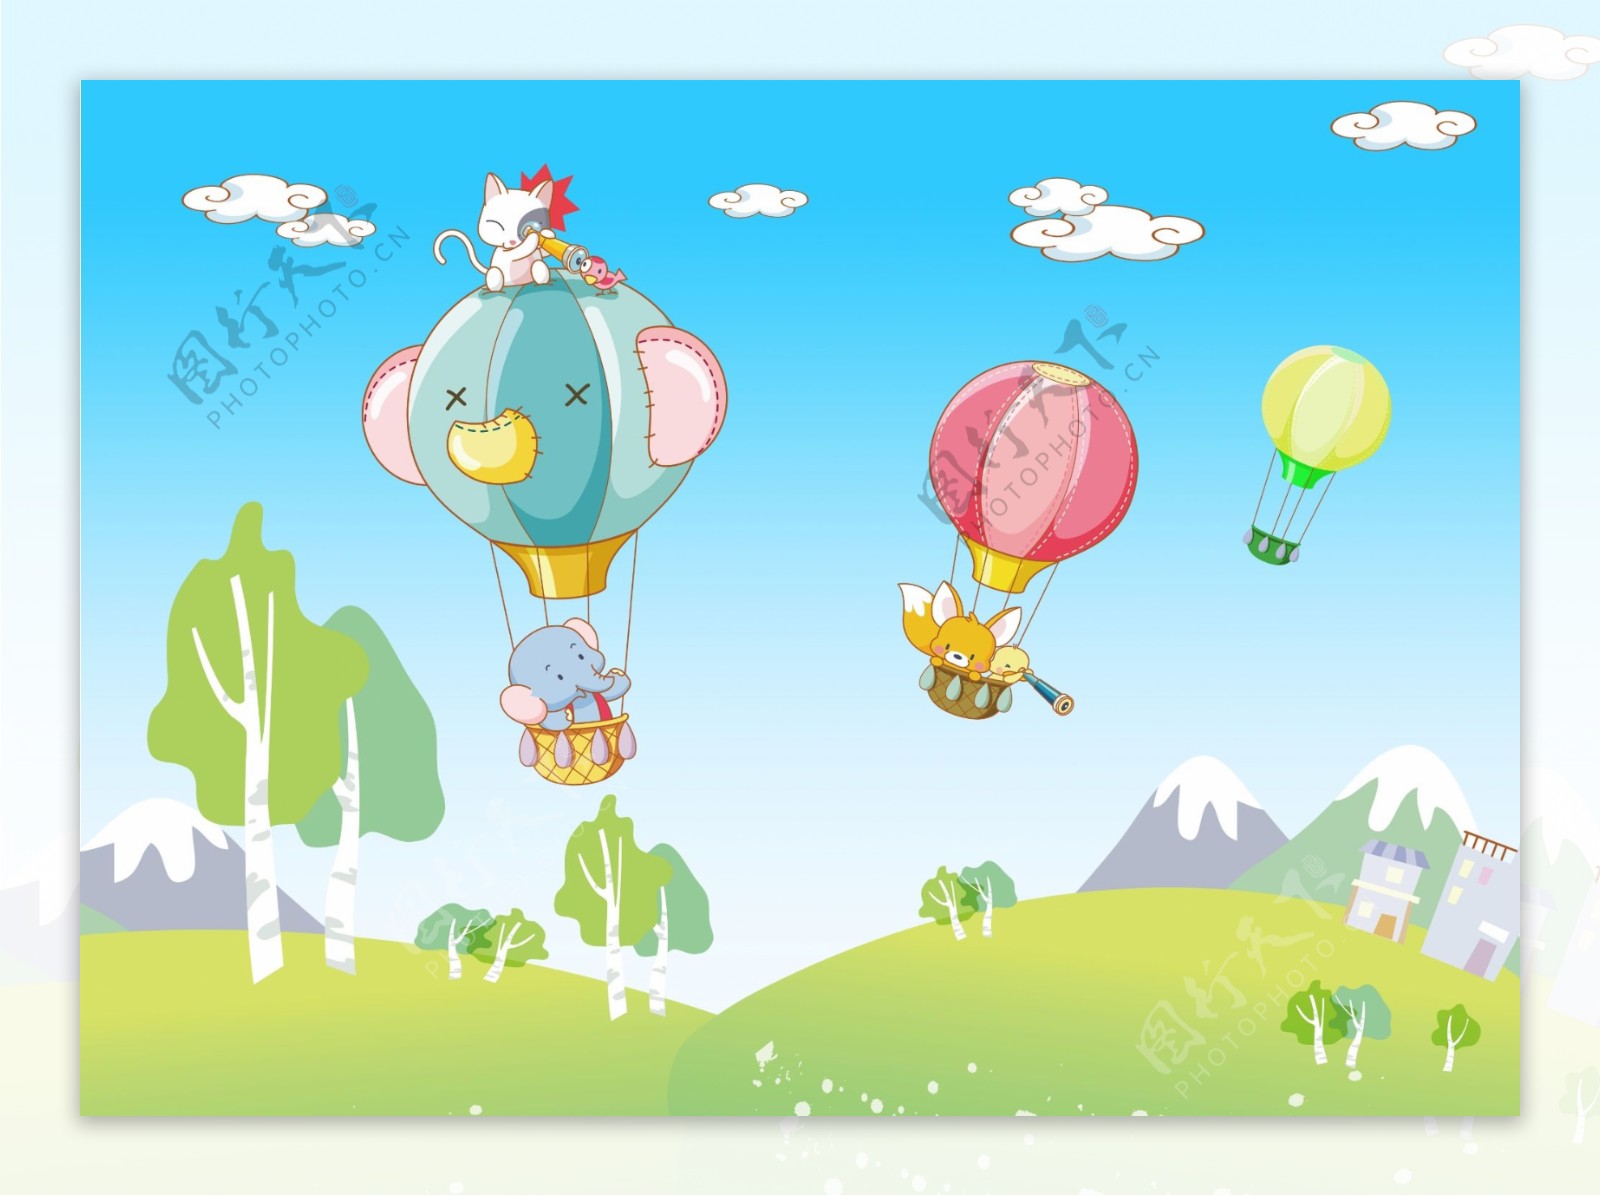 【气球环创】100多种超萌的气球动植物与卡通造型，玩爆各种场合